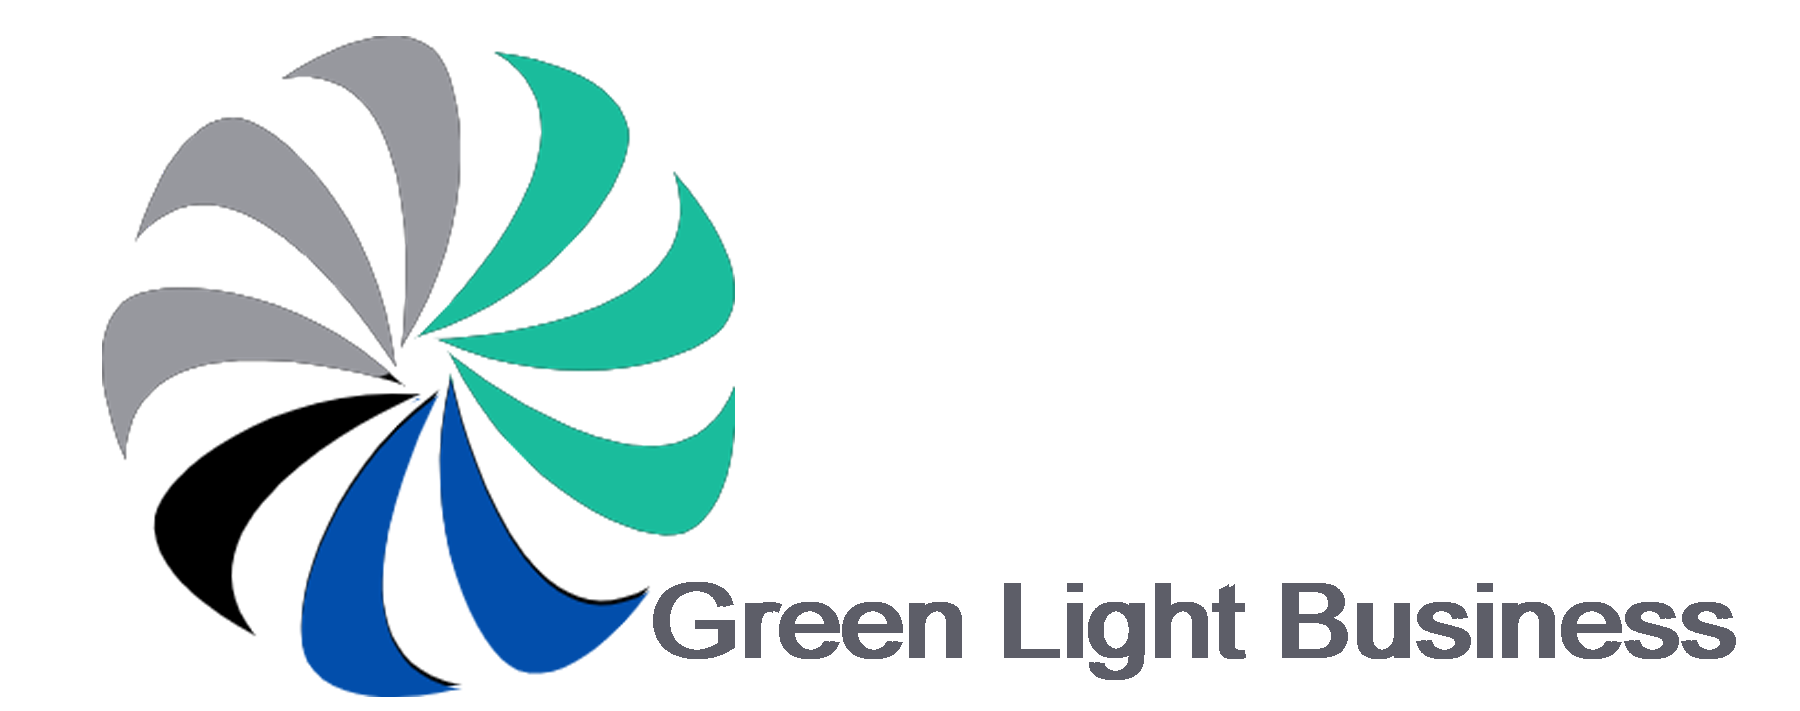 Green Light Business Importaciones